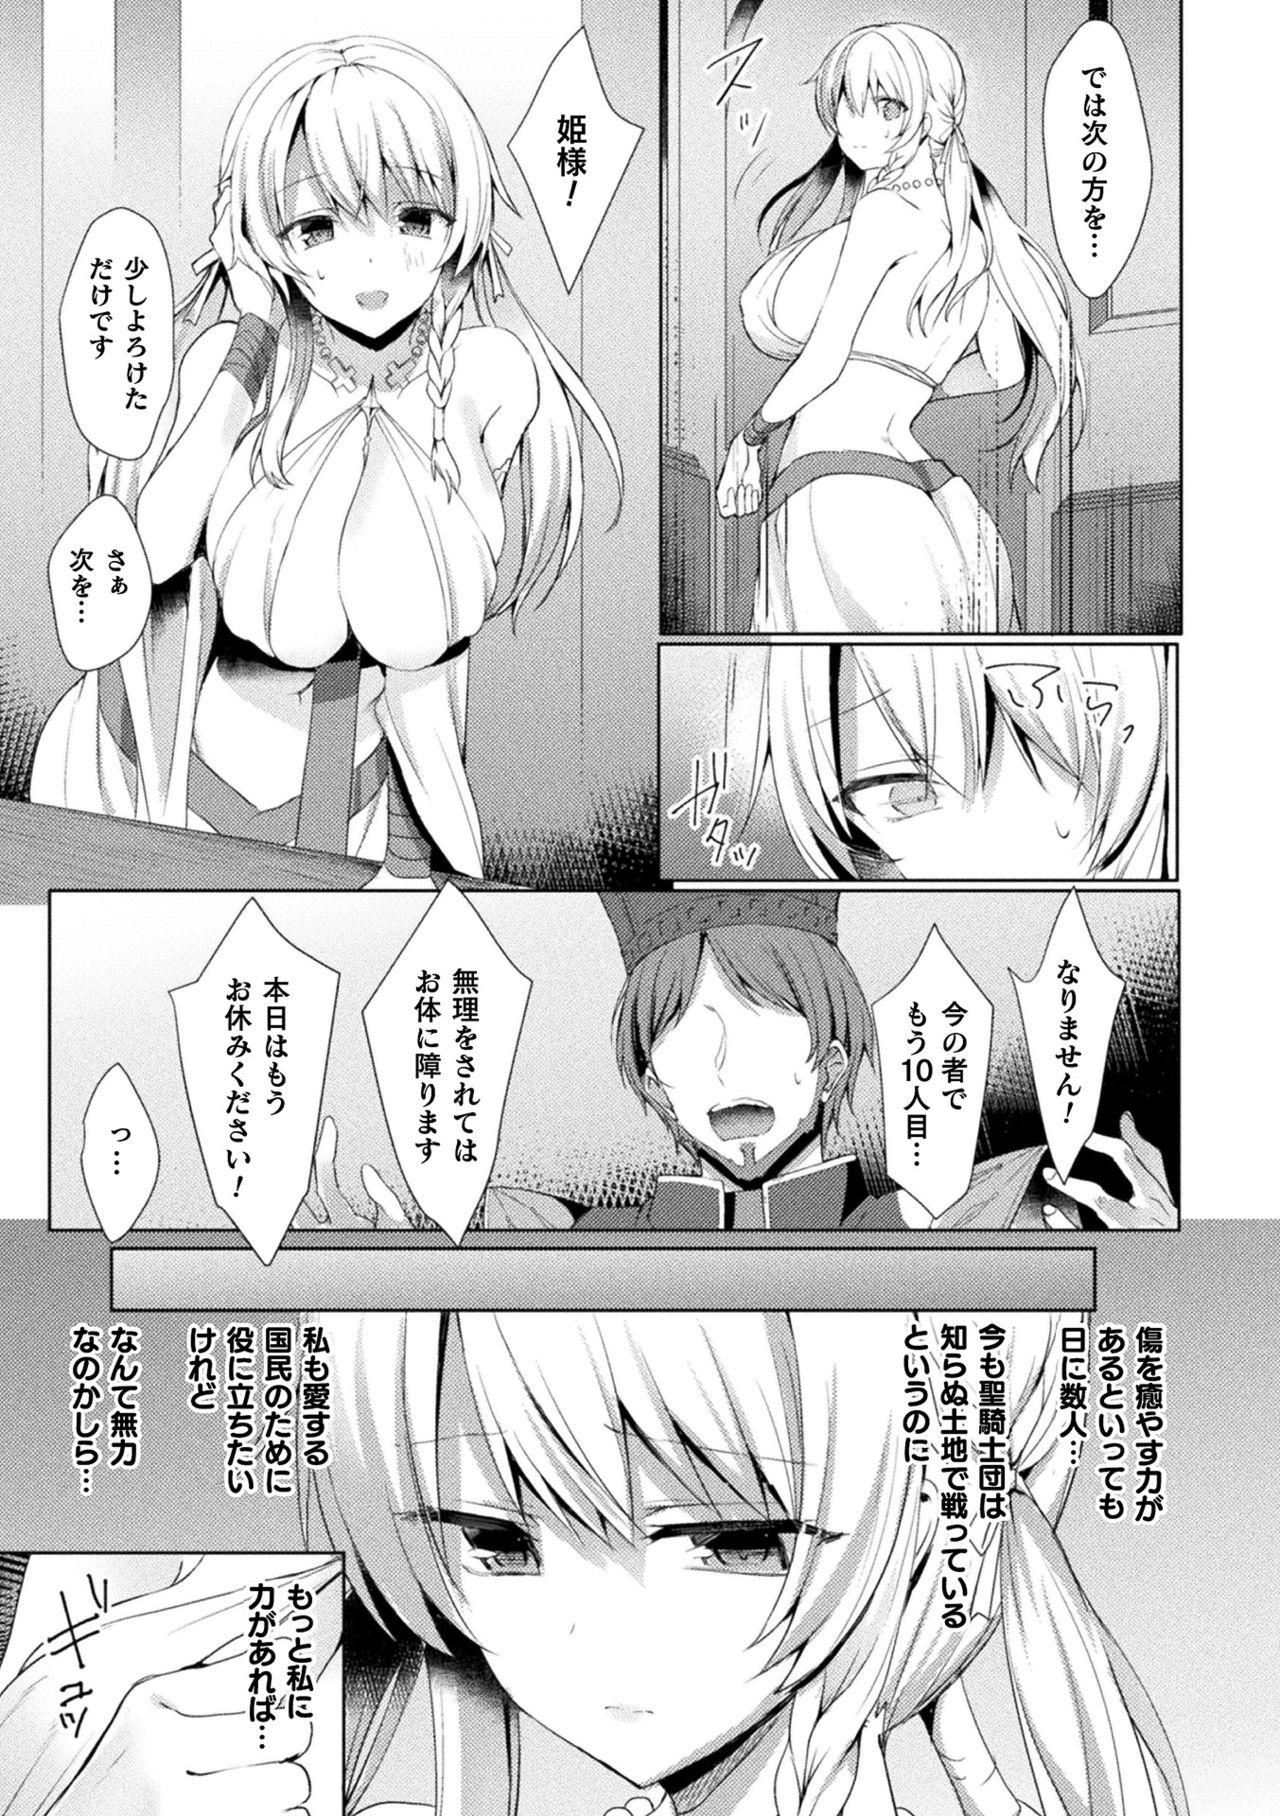 Bareback Haiboku Otome Ecstasy Vol. 15 Nice - Page 9